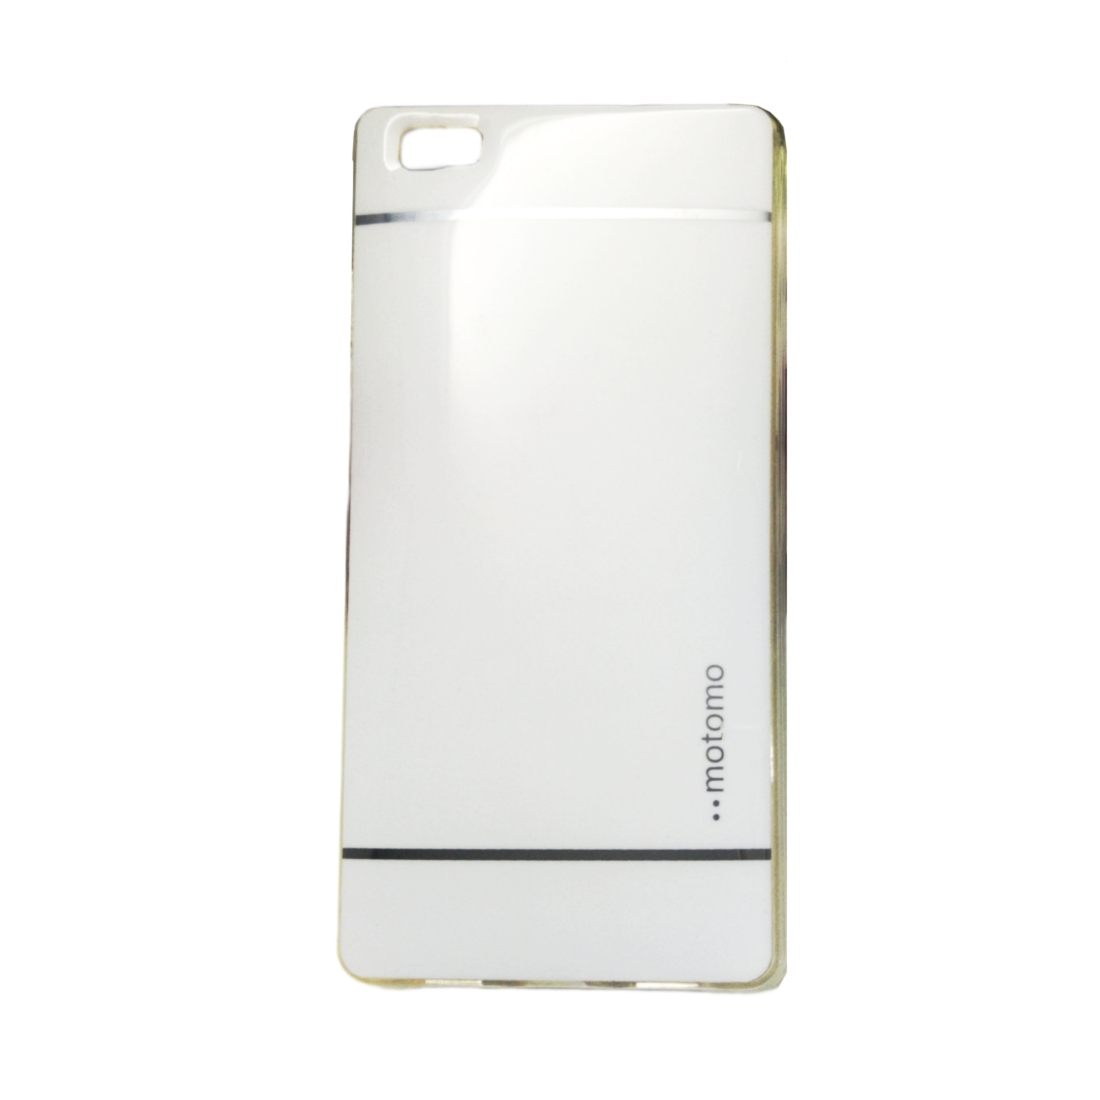 کاور موتومو مدل SA مناسب برای گوشی موبایل هوآوی P8 Lite